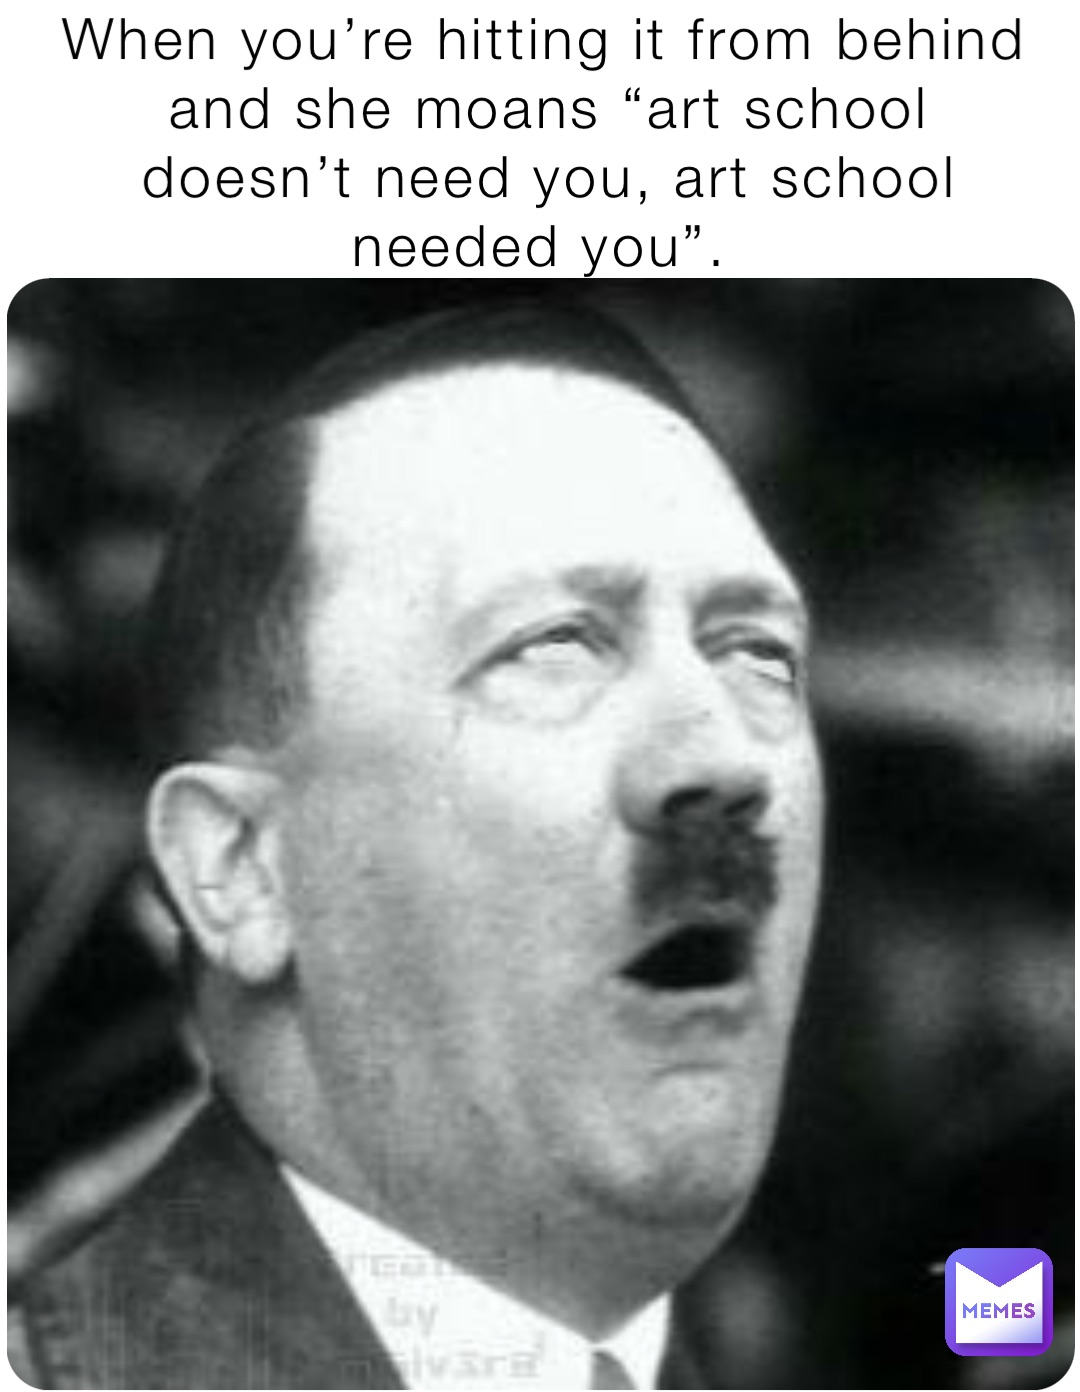 Hitler hears a jew meme